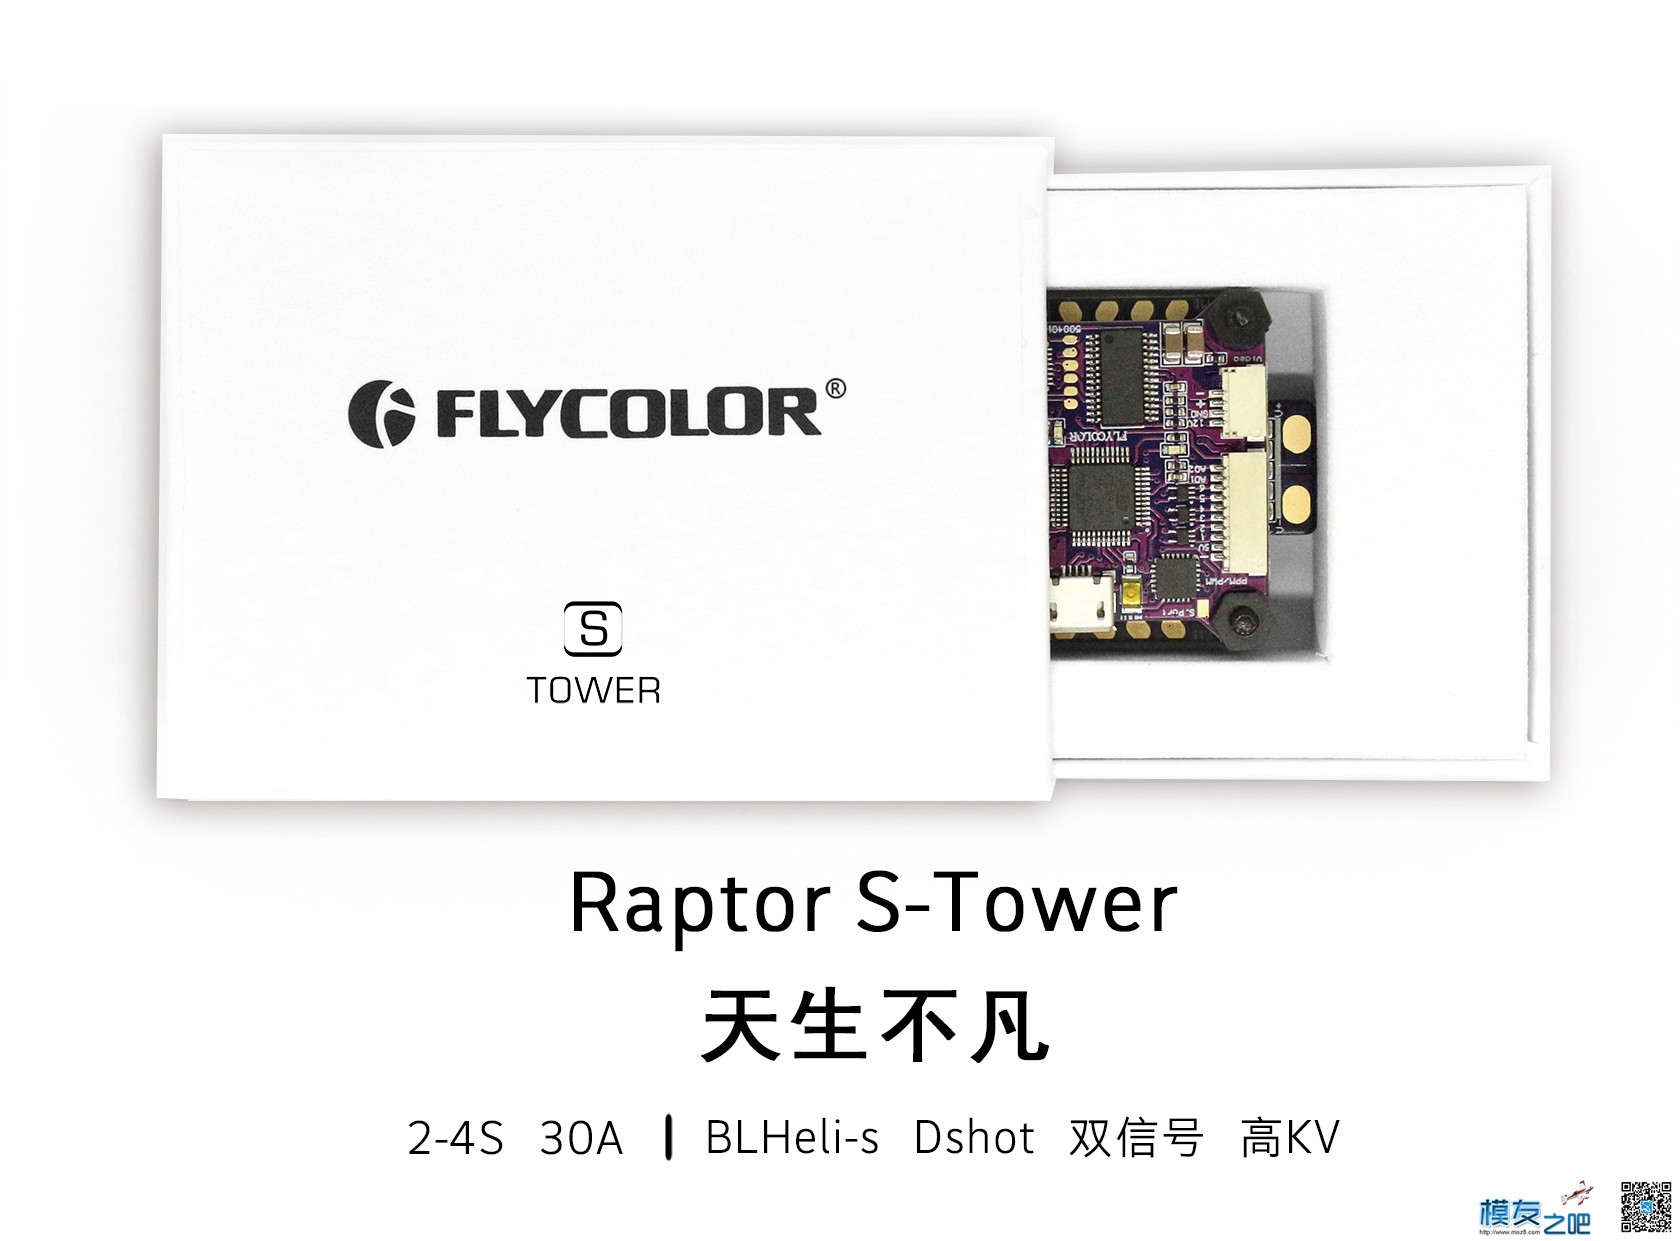 飞盈佳乐BLHeli-s塔式产品——Raptor S-Tower测试 飞控,电调,电机,机器人,航拍 作者:飞天狼 852 